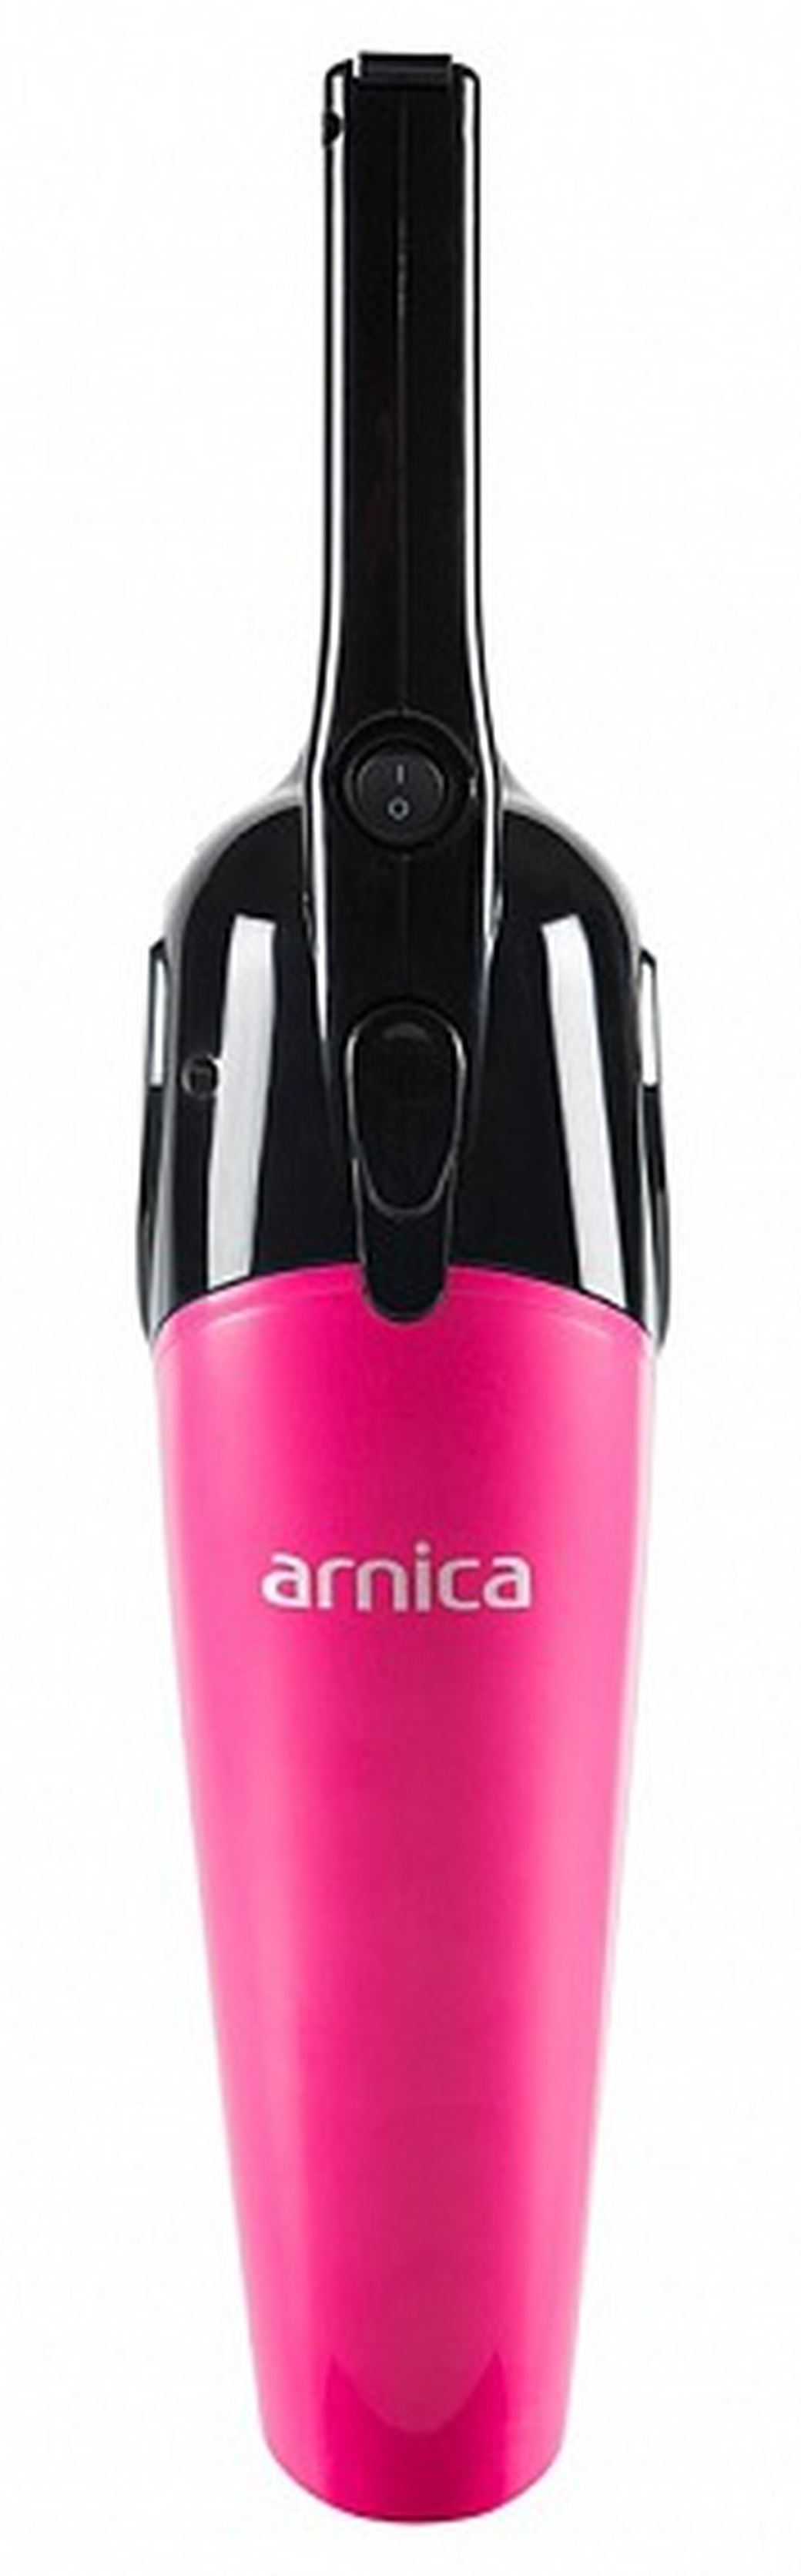 Пылесос Arnica Merlin Pro, розовый фото